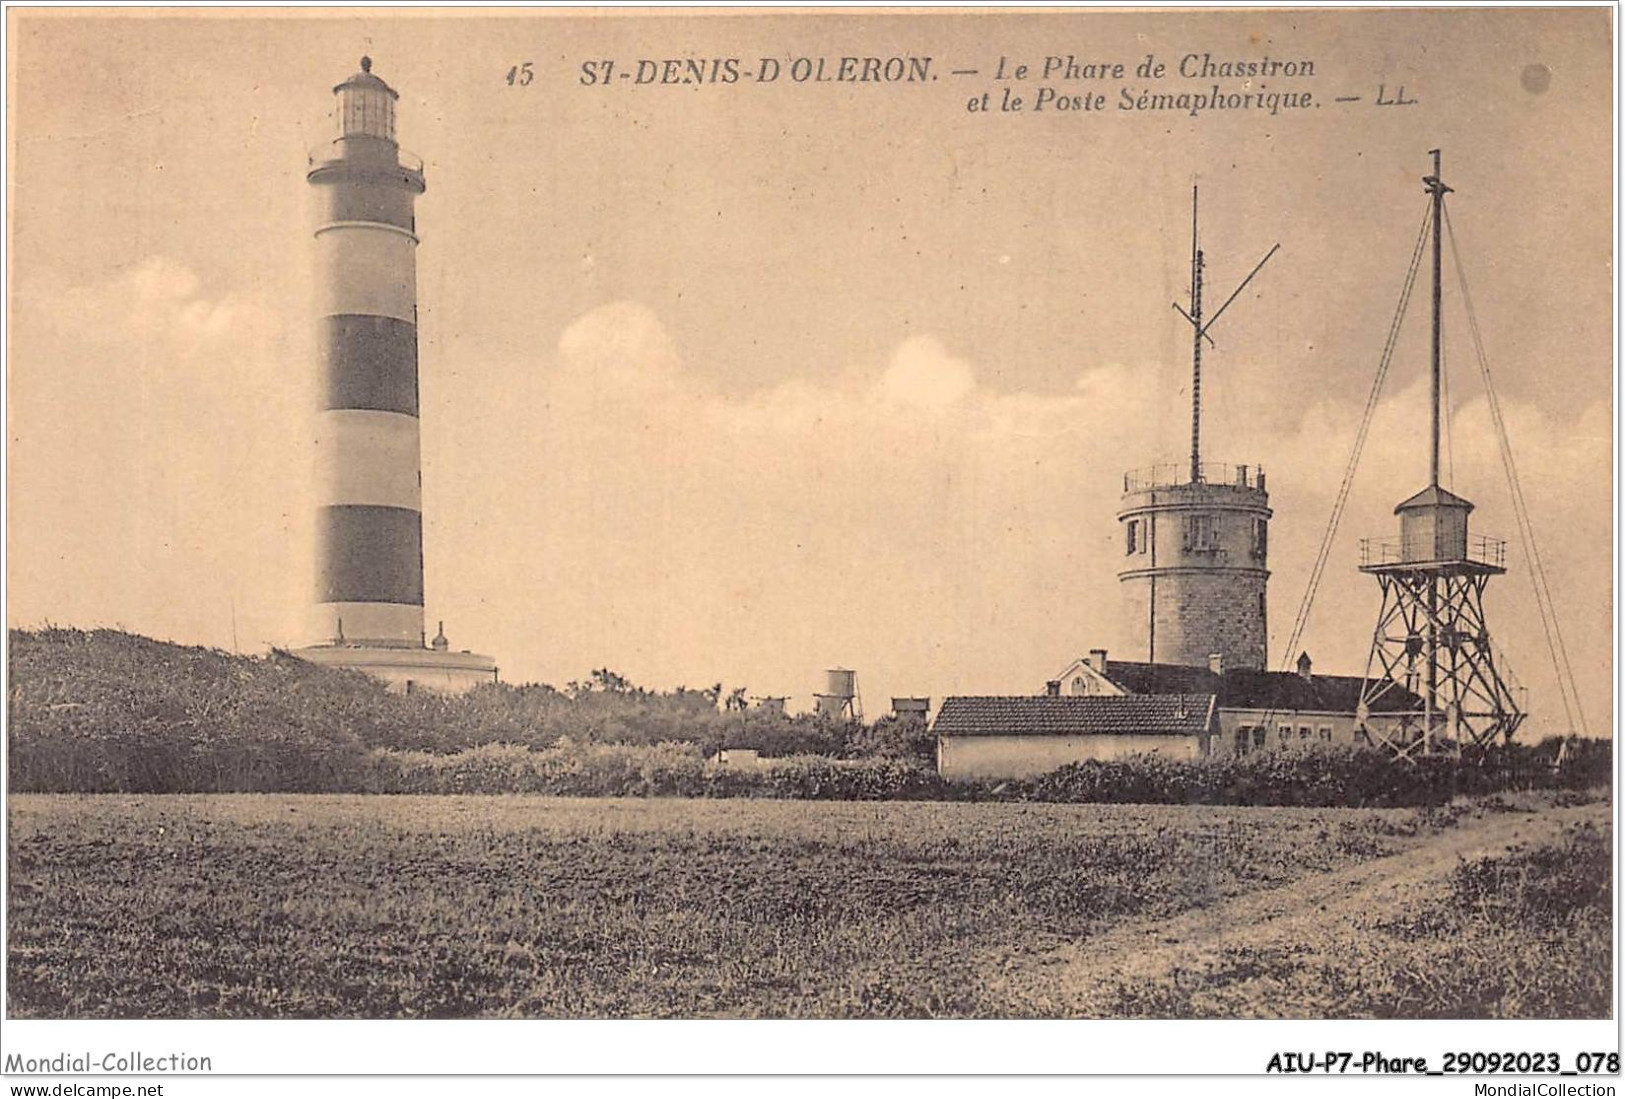 AIUP7-0632 - PHARE - St-denis-doleron - Le Phare De Chassiron Et Le Poste Sémaphorique - Lighthouses